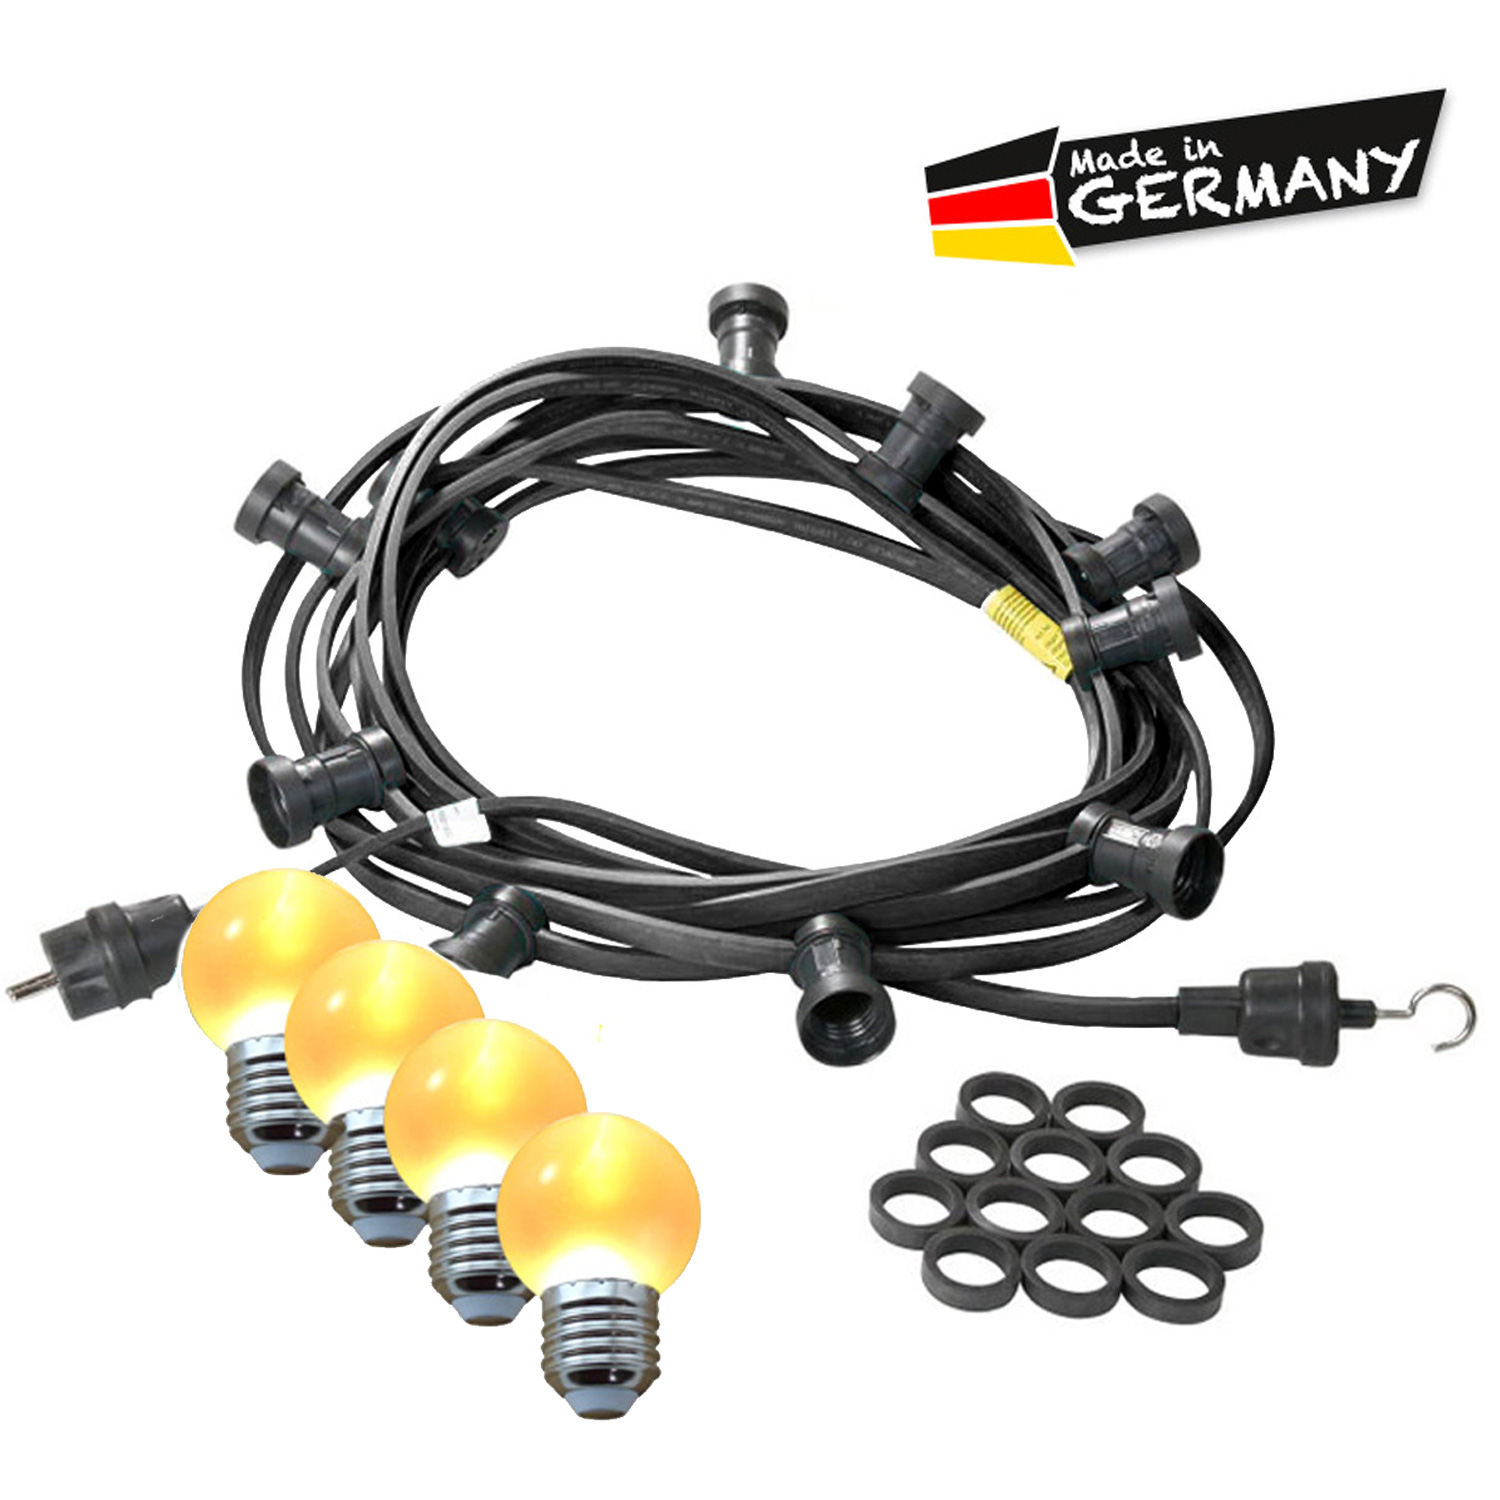 Illu-/Partylichterkette 5m - Außenlichterkette - Made in Germany - 10 x ultra-warmweiße LED Kugeln